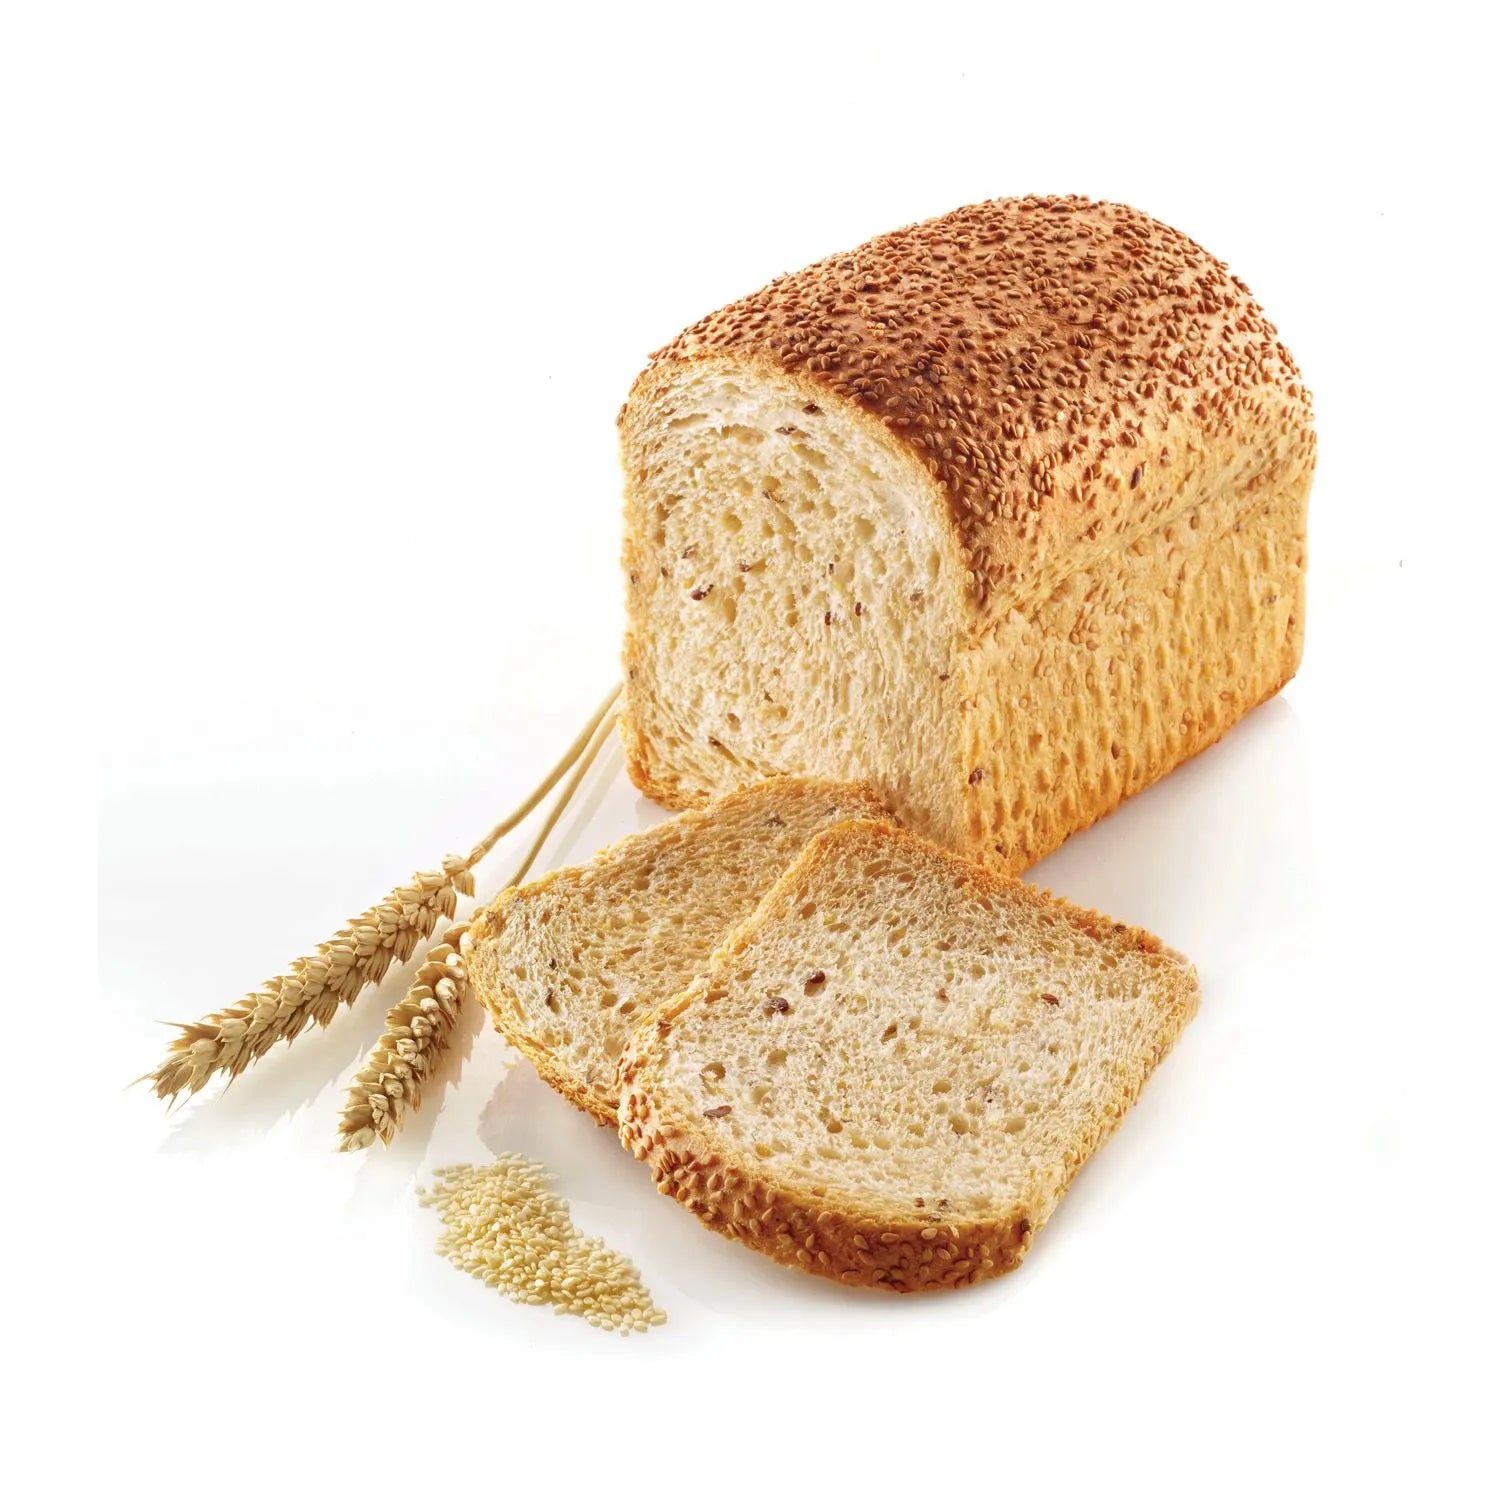 Silikónová forma sendvičový chlebík